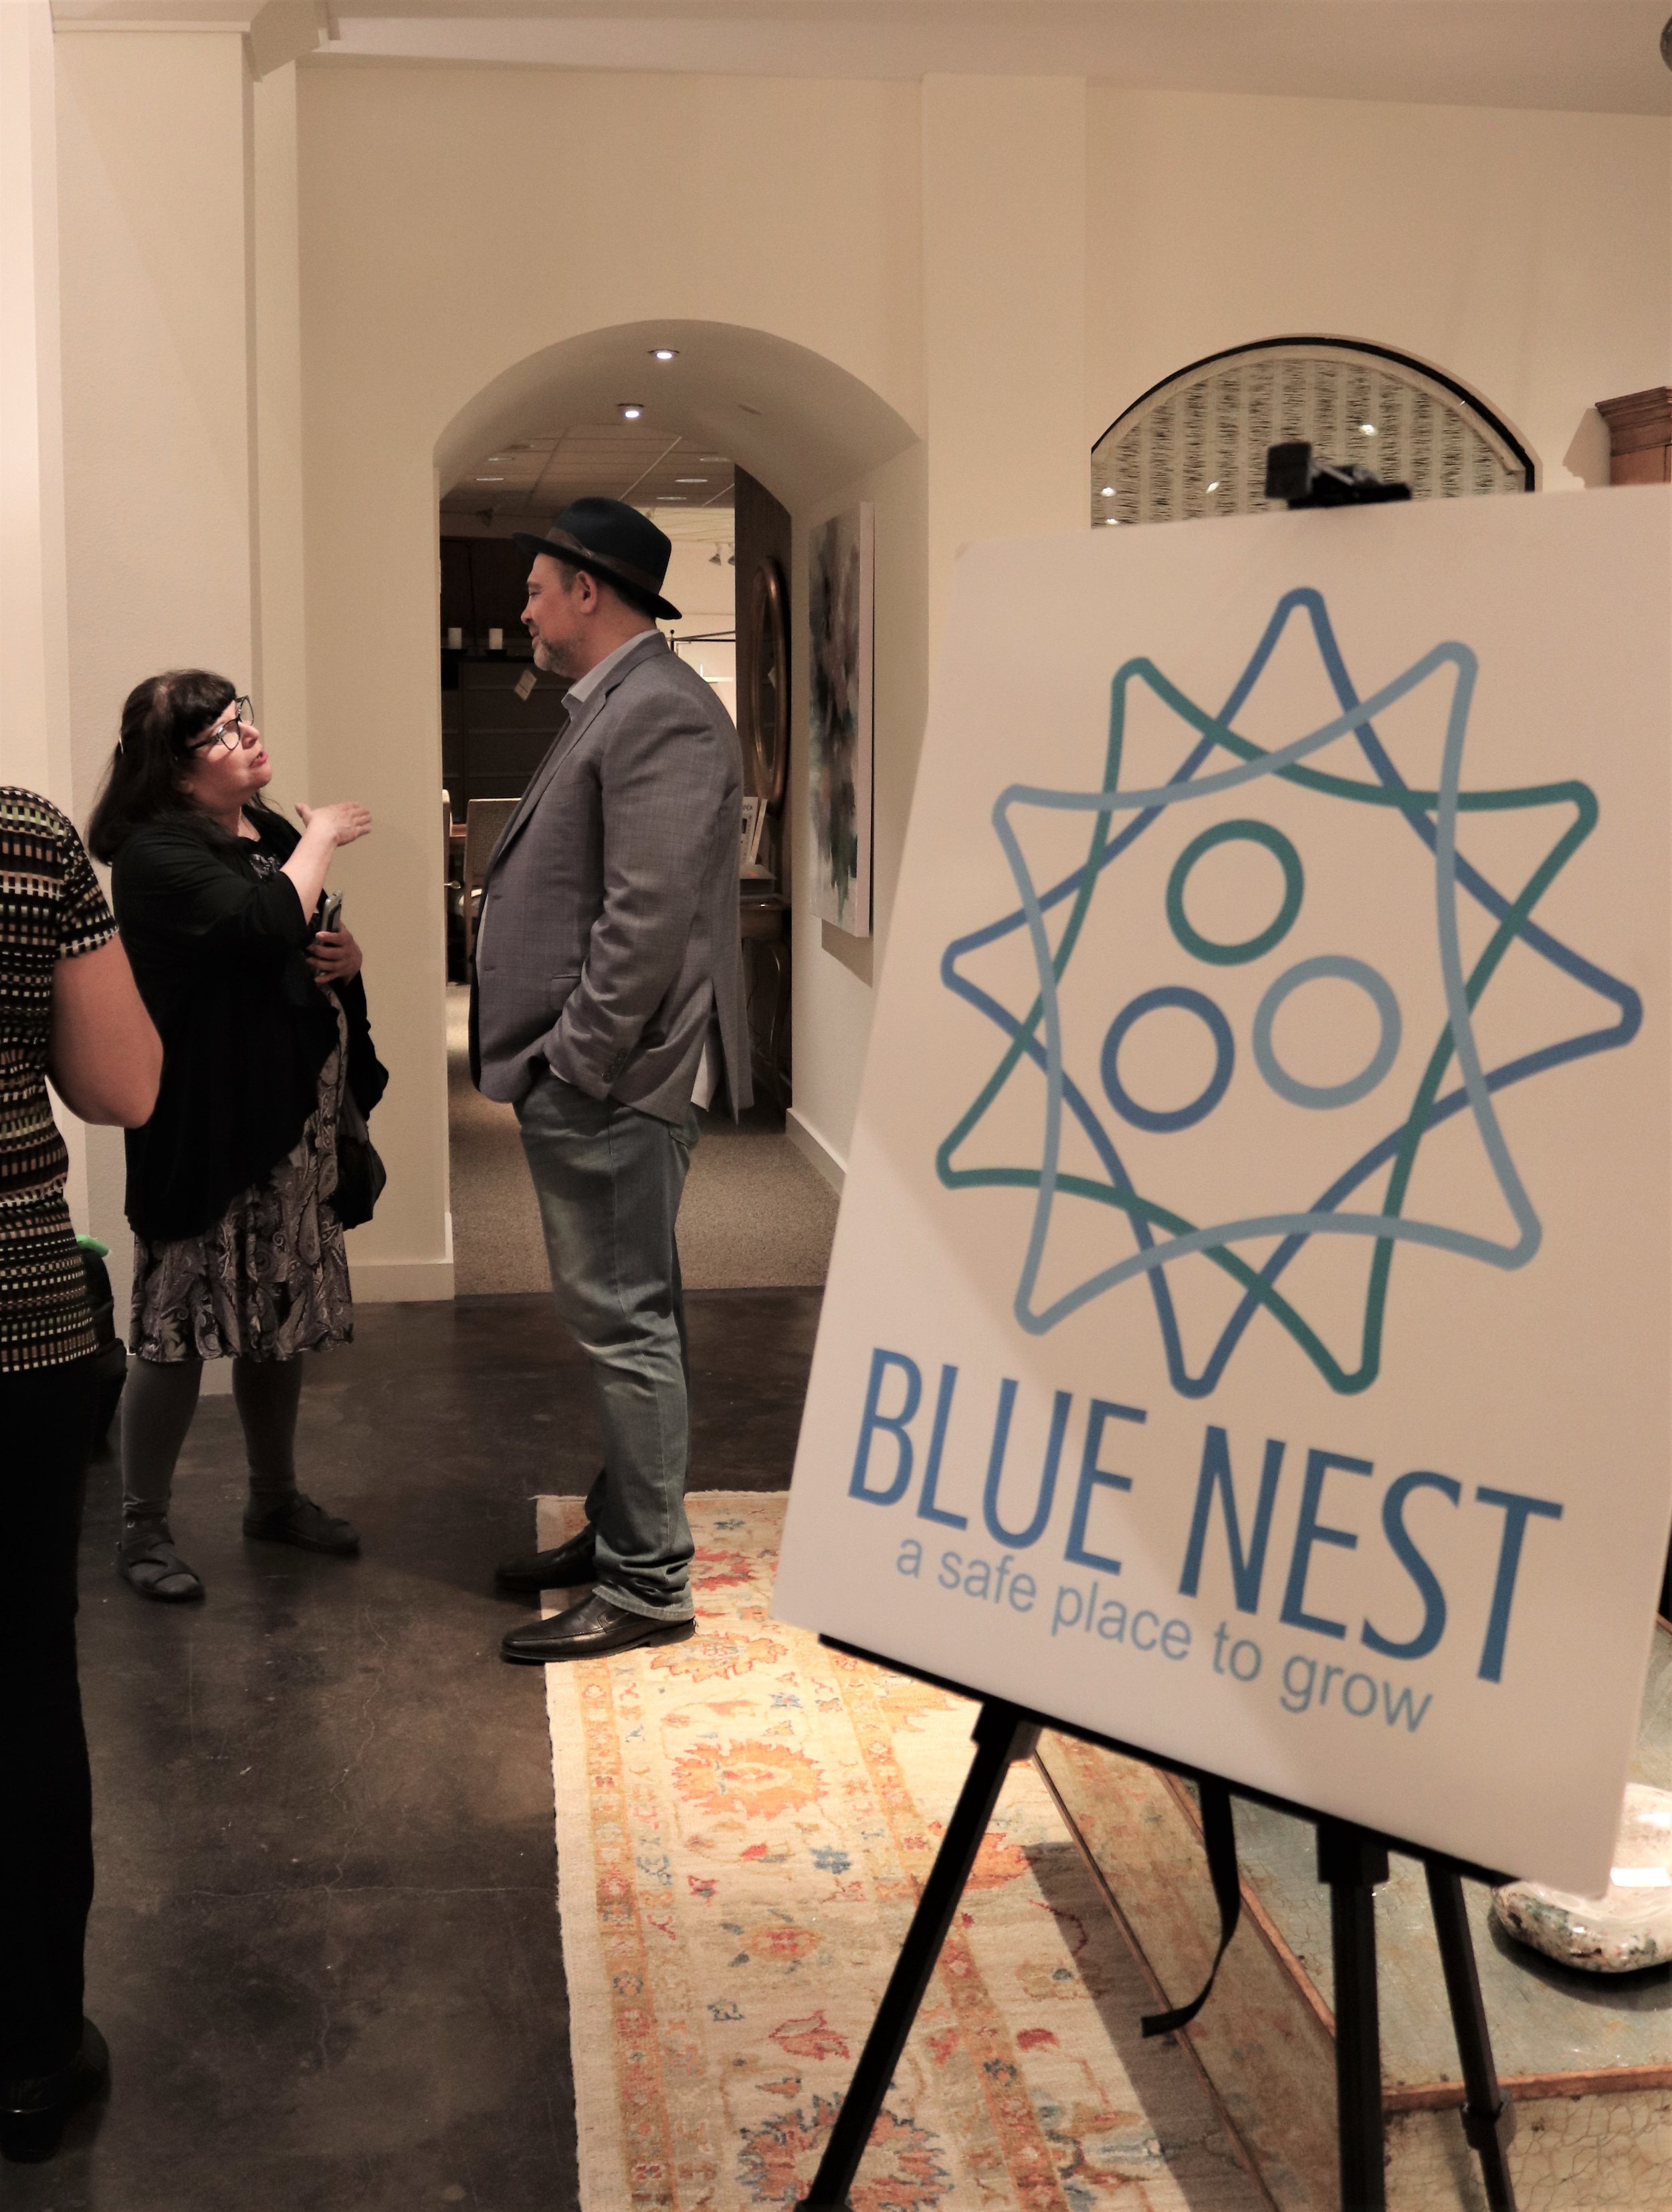 Blue nest sign.jpg